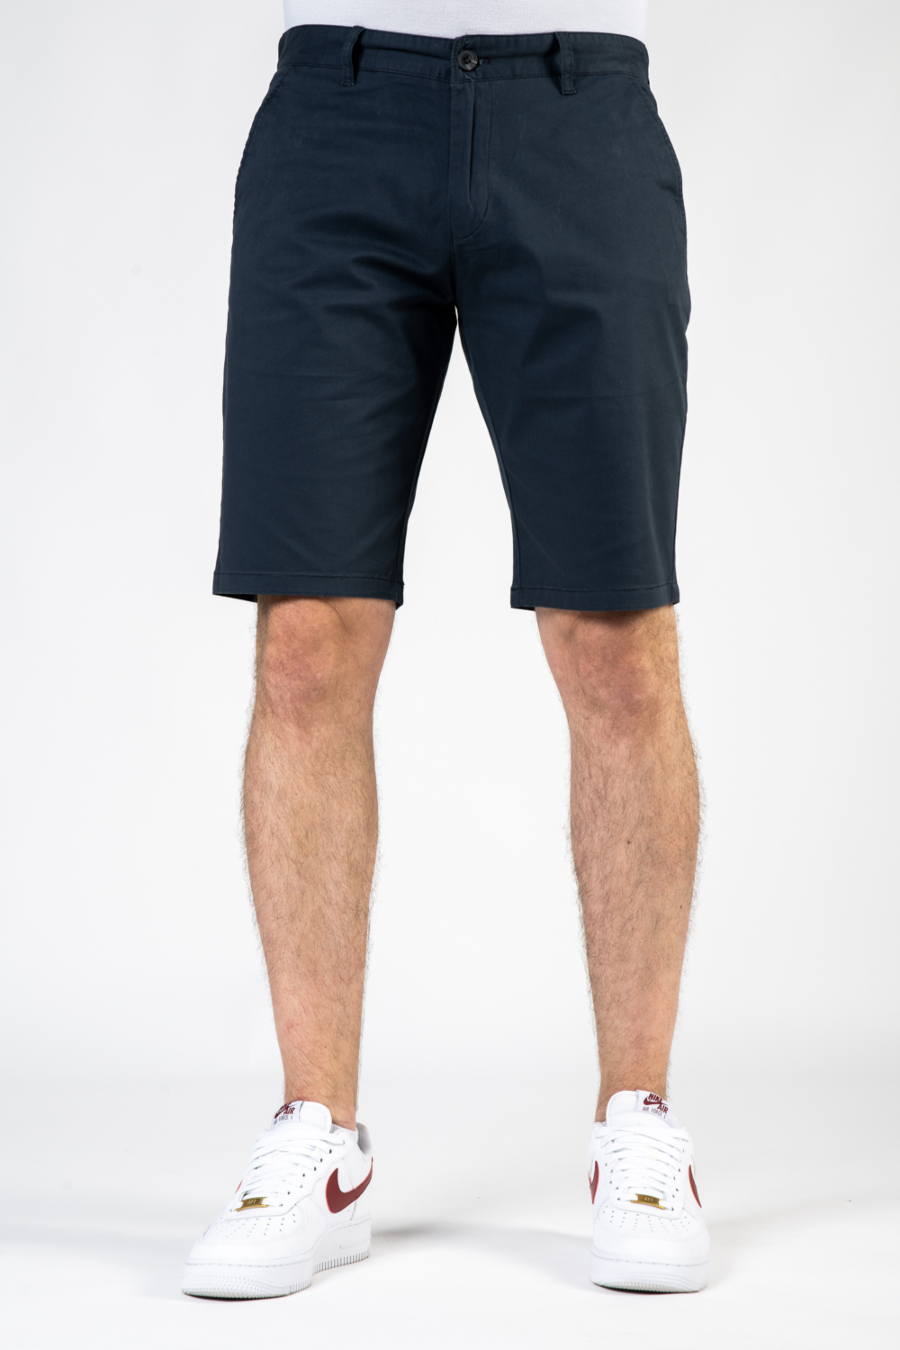 Moške kratke hlače P7303-2, modre